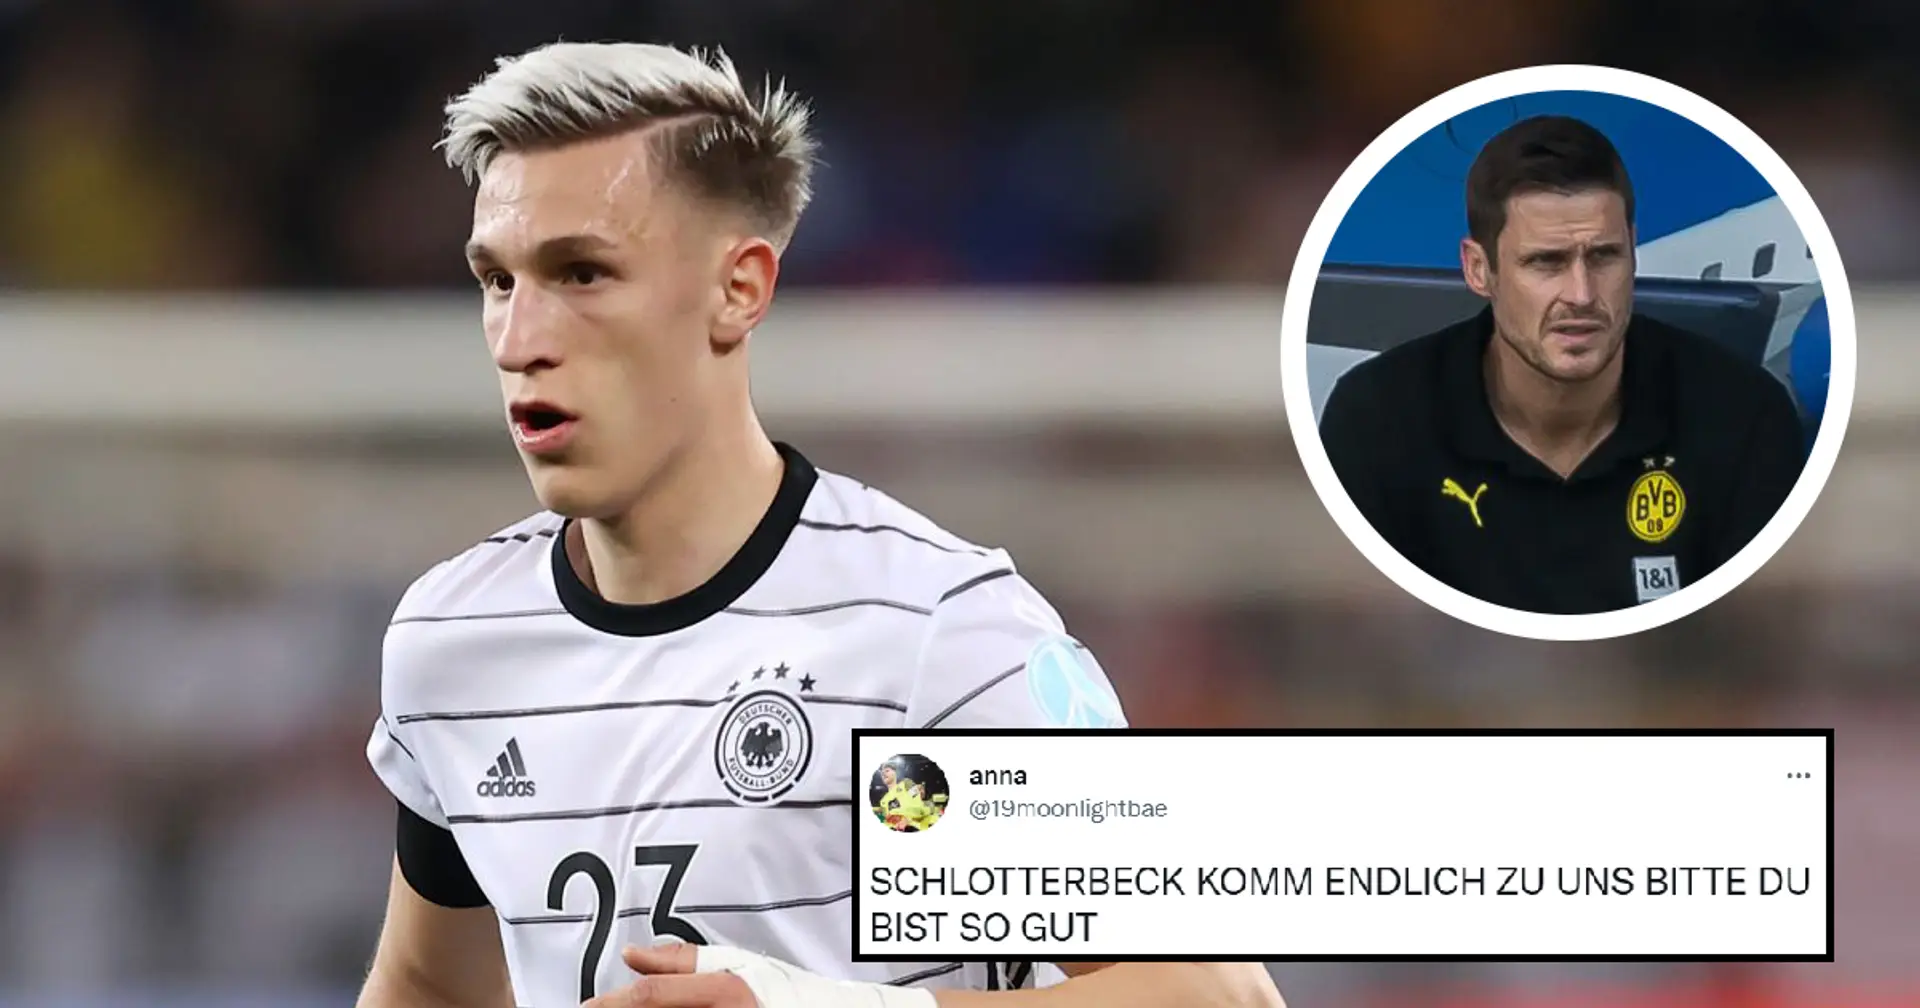 "Wir müssen ihn bekommen": BVB-Fans wollen, dass Borussia Schlotterbeck nach seinem überragenden Nationalmannschaftsdebüt so schnell wie möglich verpflichtet